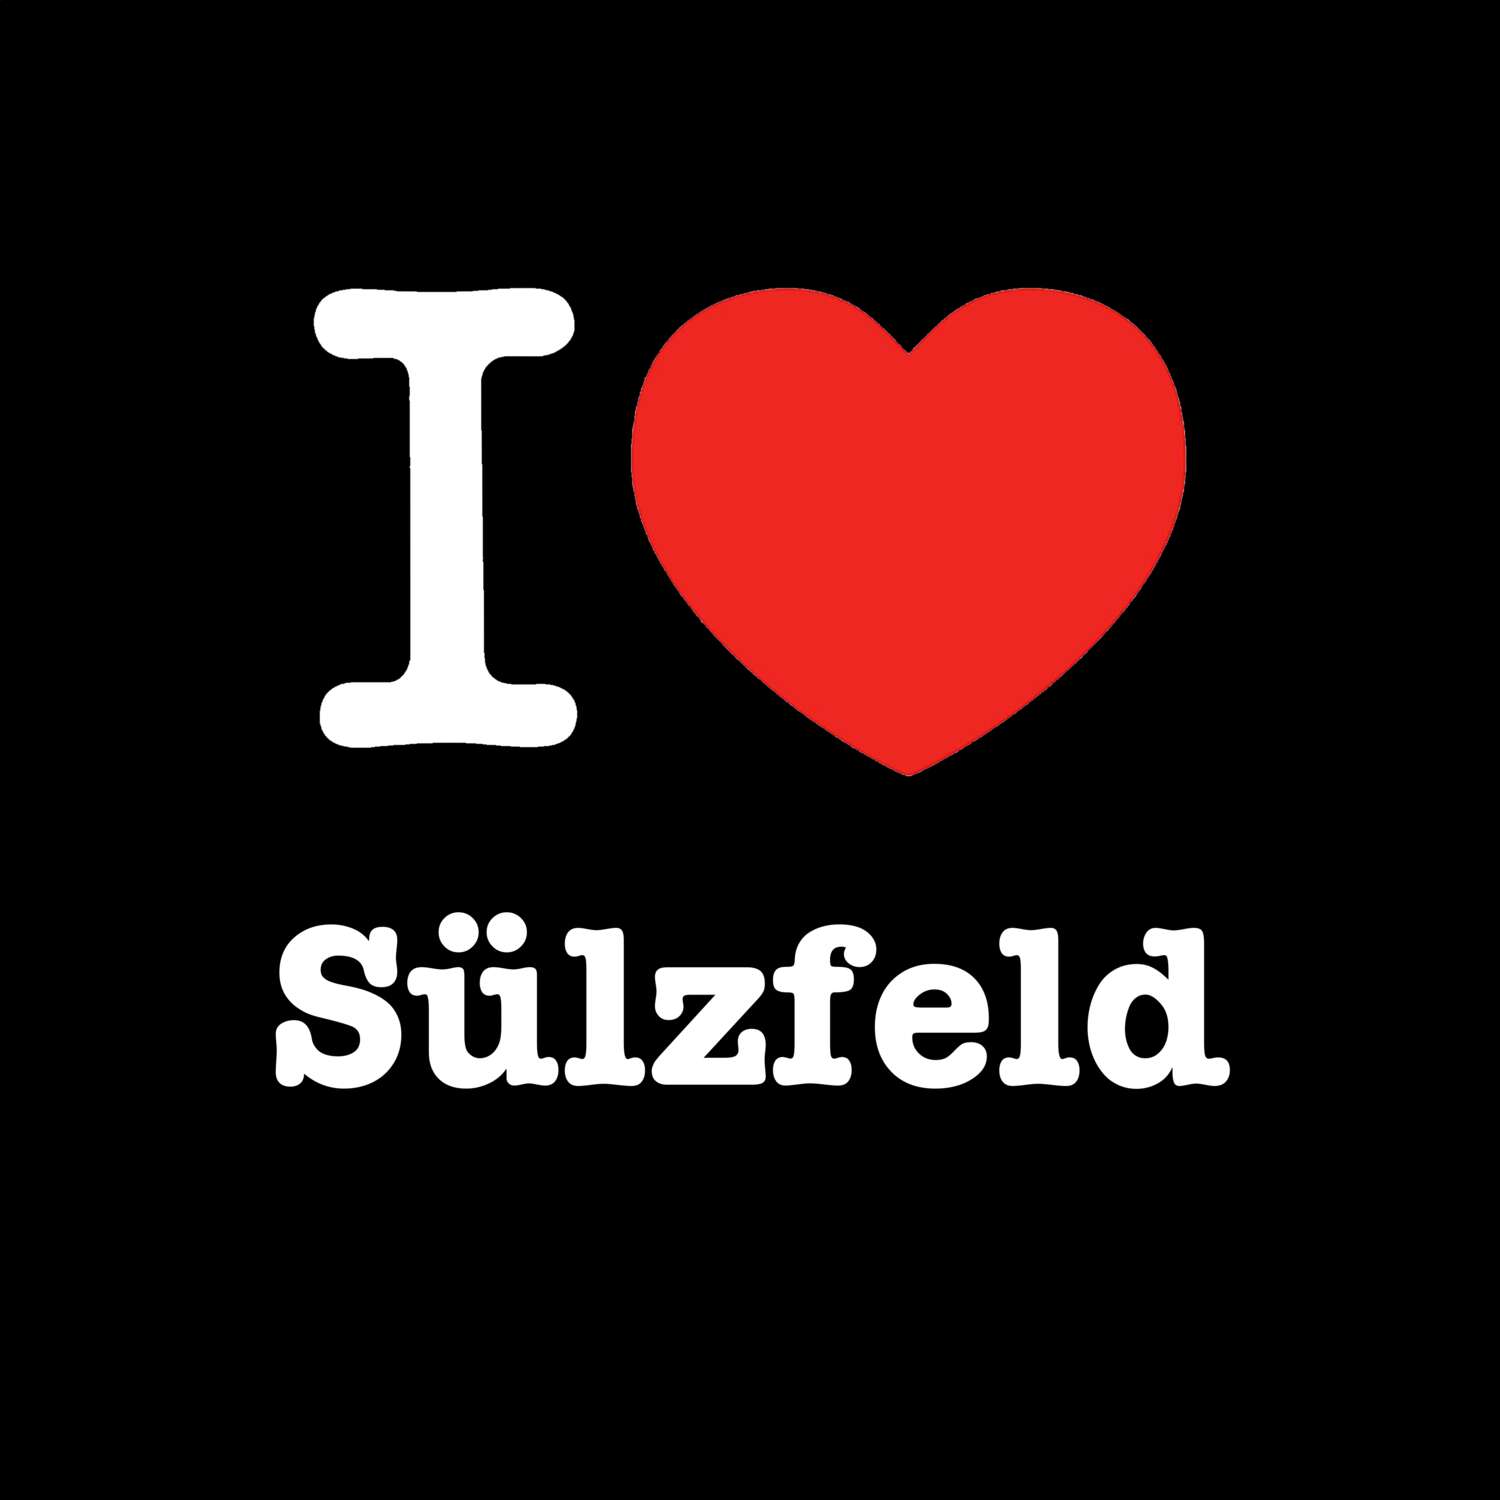 Sülzfeld T-Shirt »I love«